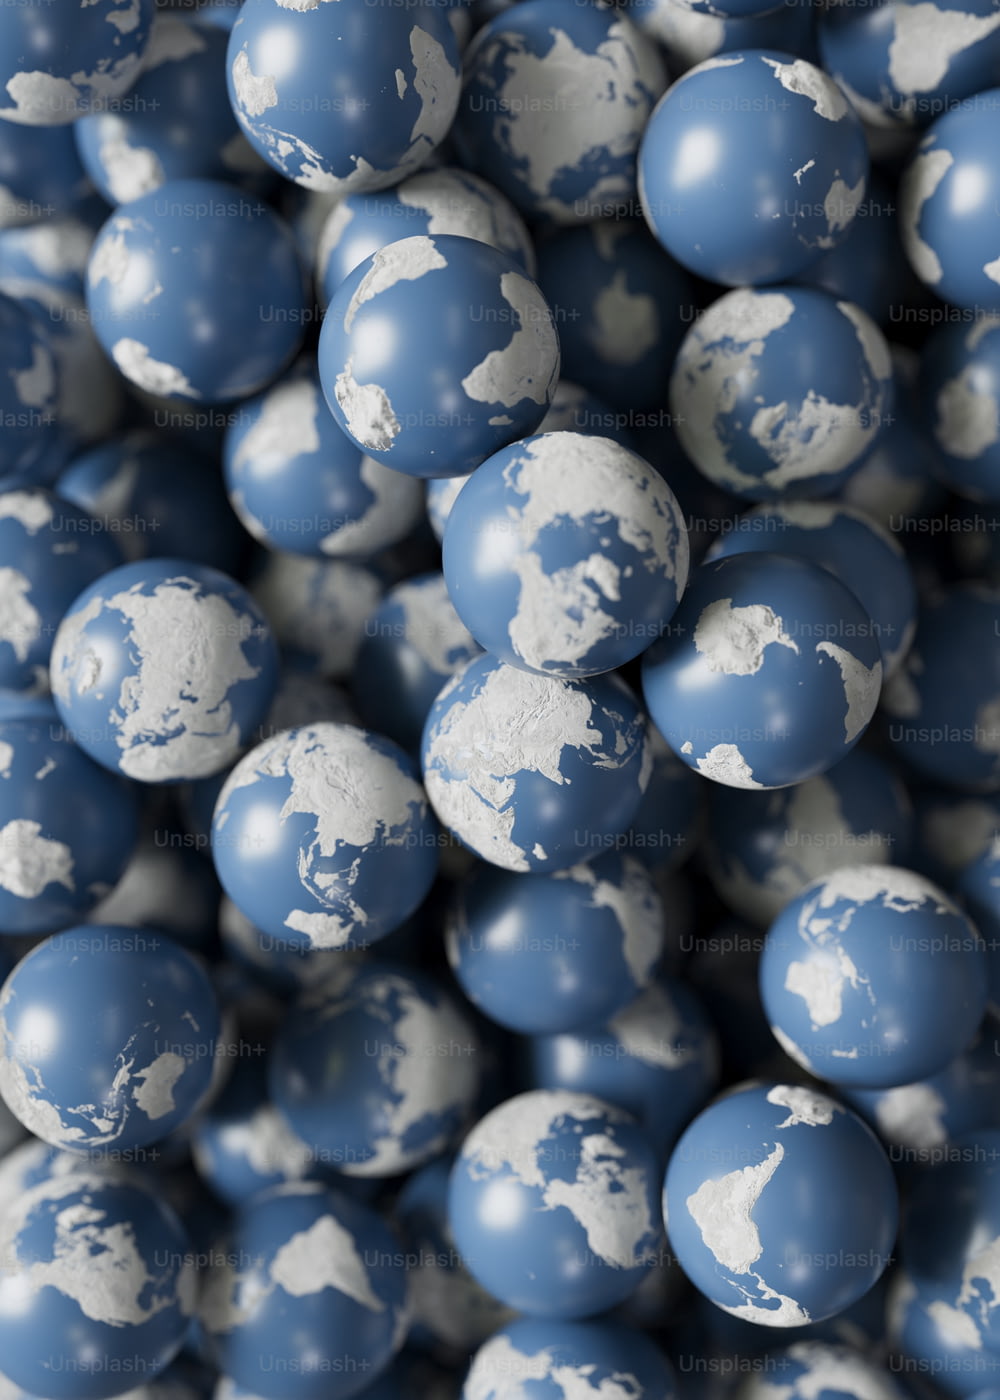 Ein Haufen blau-weißer Kugeln mit einer Weltkarte darauf